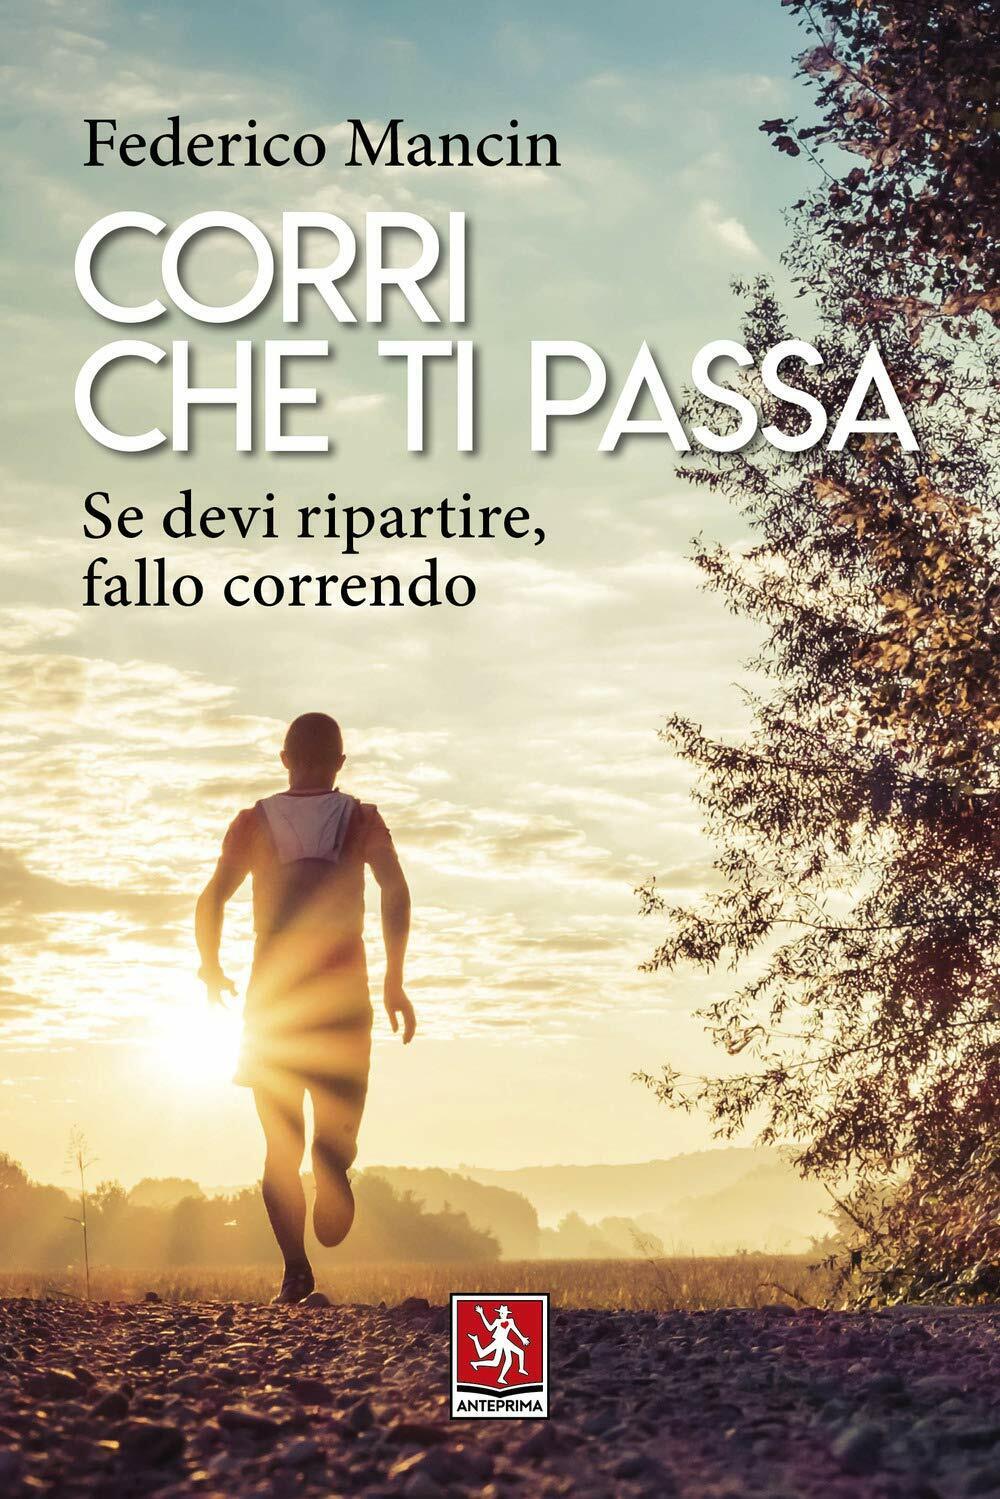 Corri che ti passa - Federico Mancin - Anteprima edizioni, 2020 libro usato